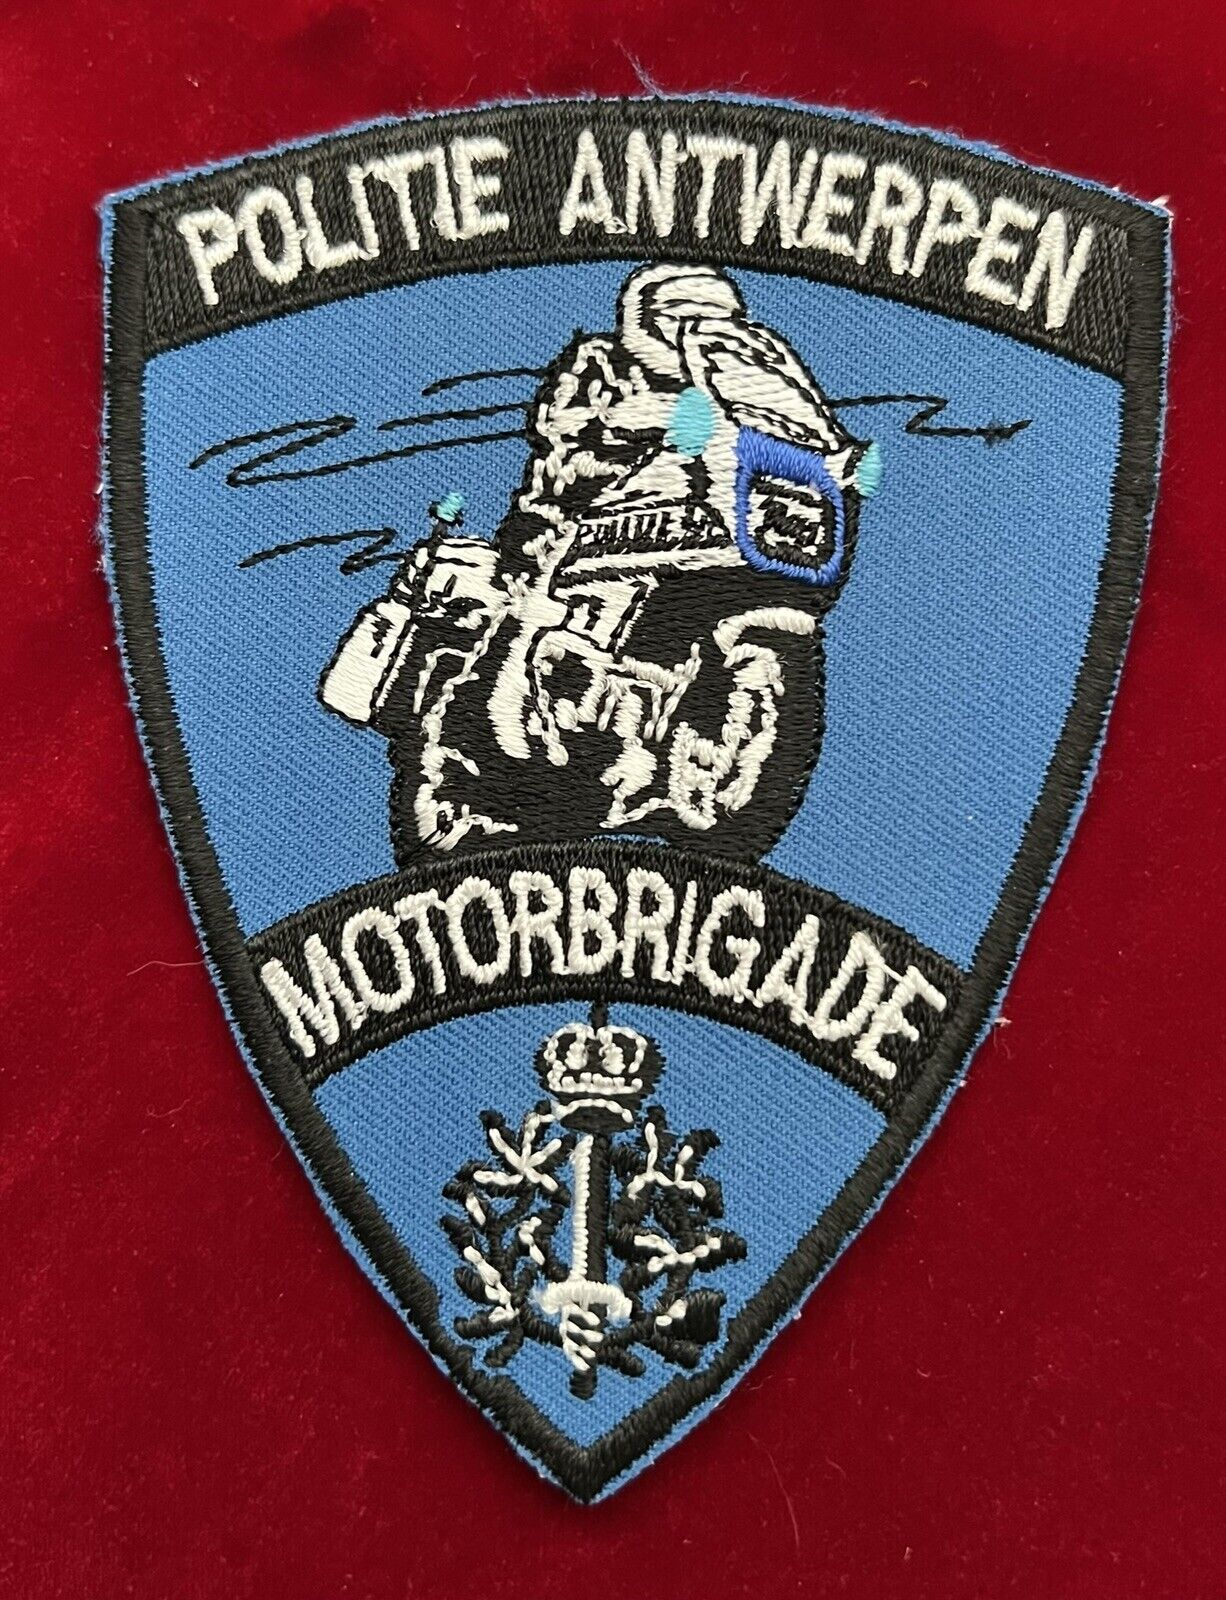 Antwerp Motor Cycle Police. Politie Antwerpen MotorBrigade, Belgium